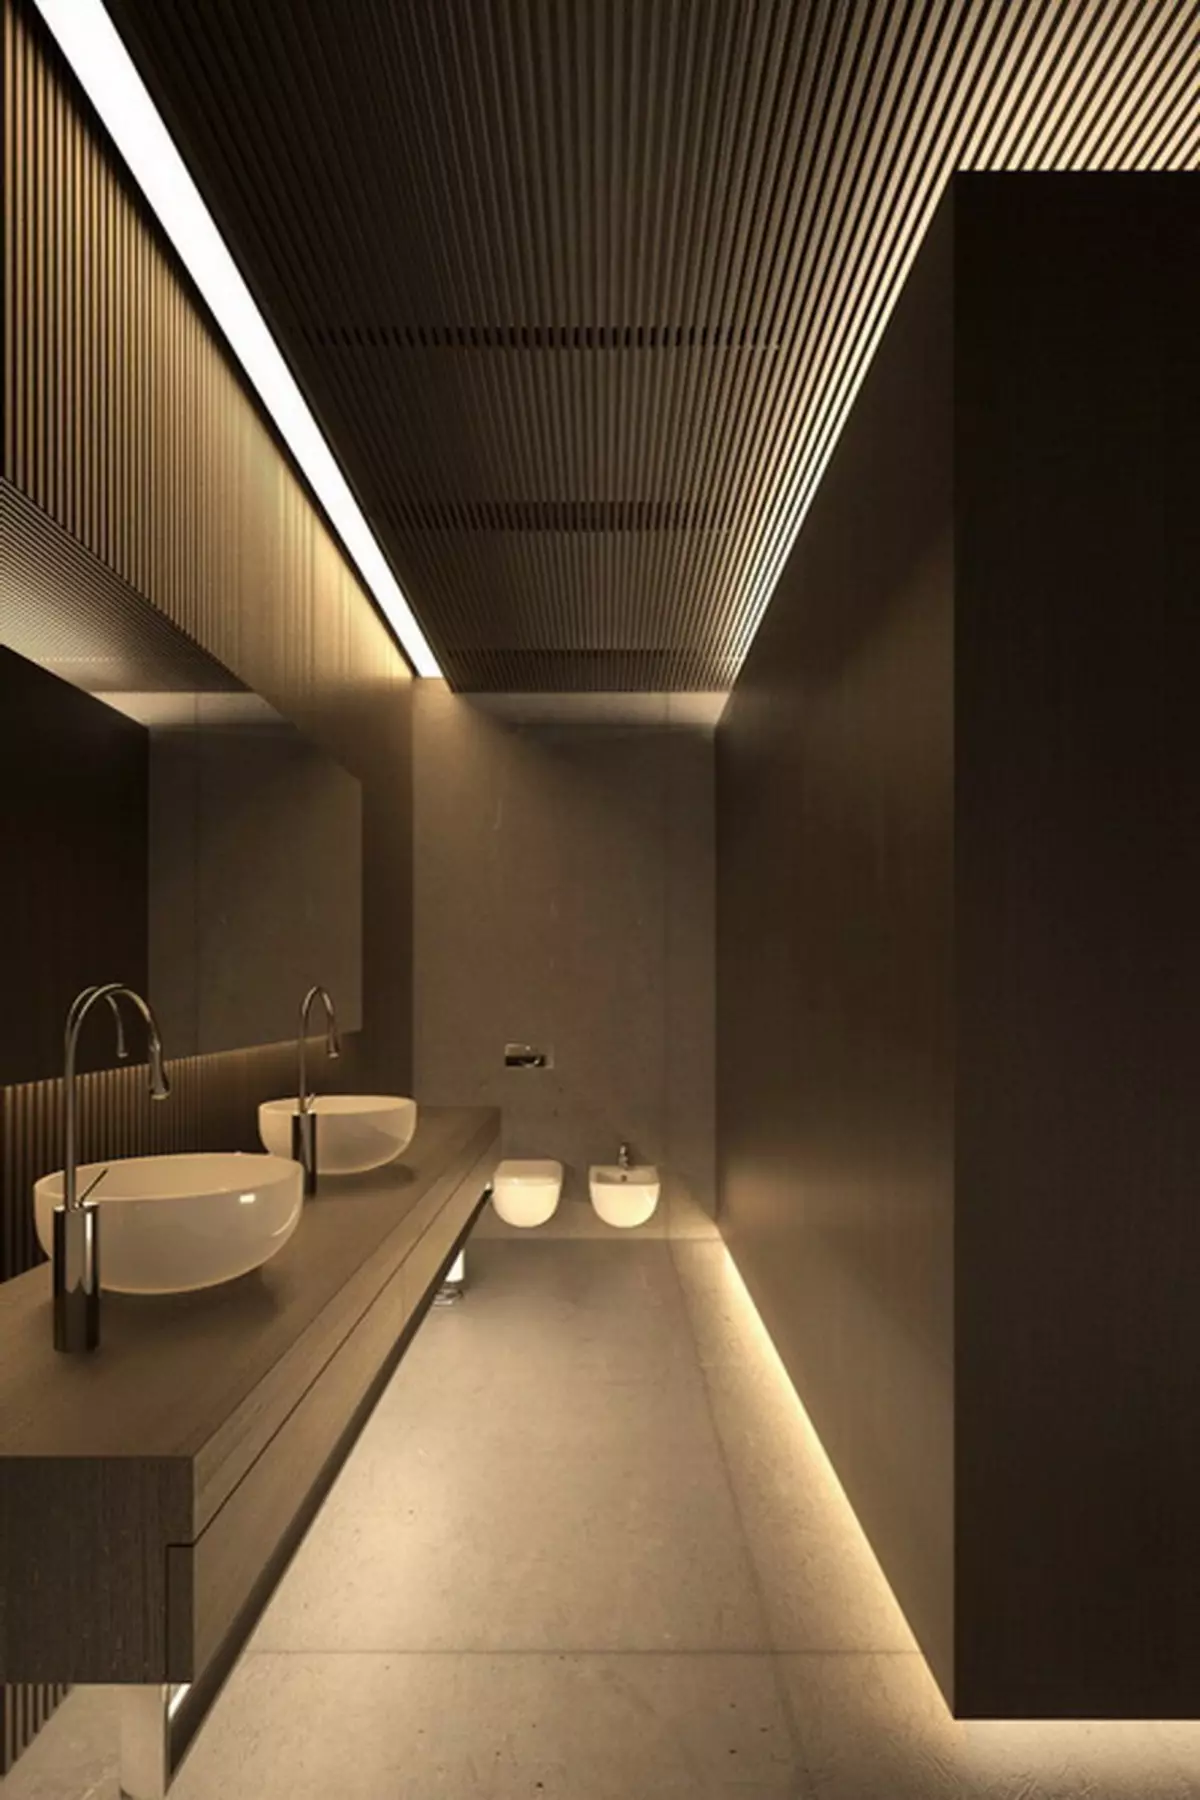 Toaletă neagră (67 fotografii): Design de toaletă în culori alb-negru, selecție de o toaletă color închis într-un apartament, finisaj cu plăci negre și roșii 10501_42